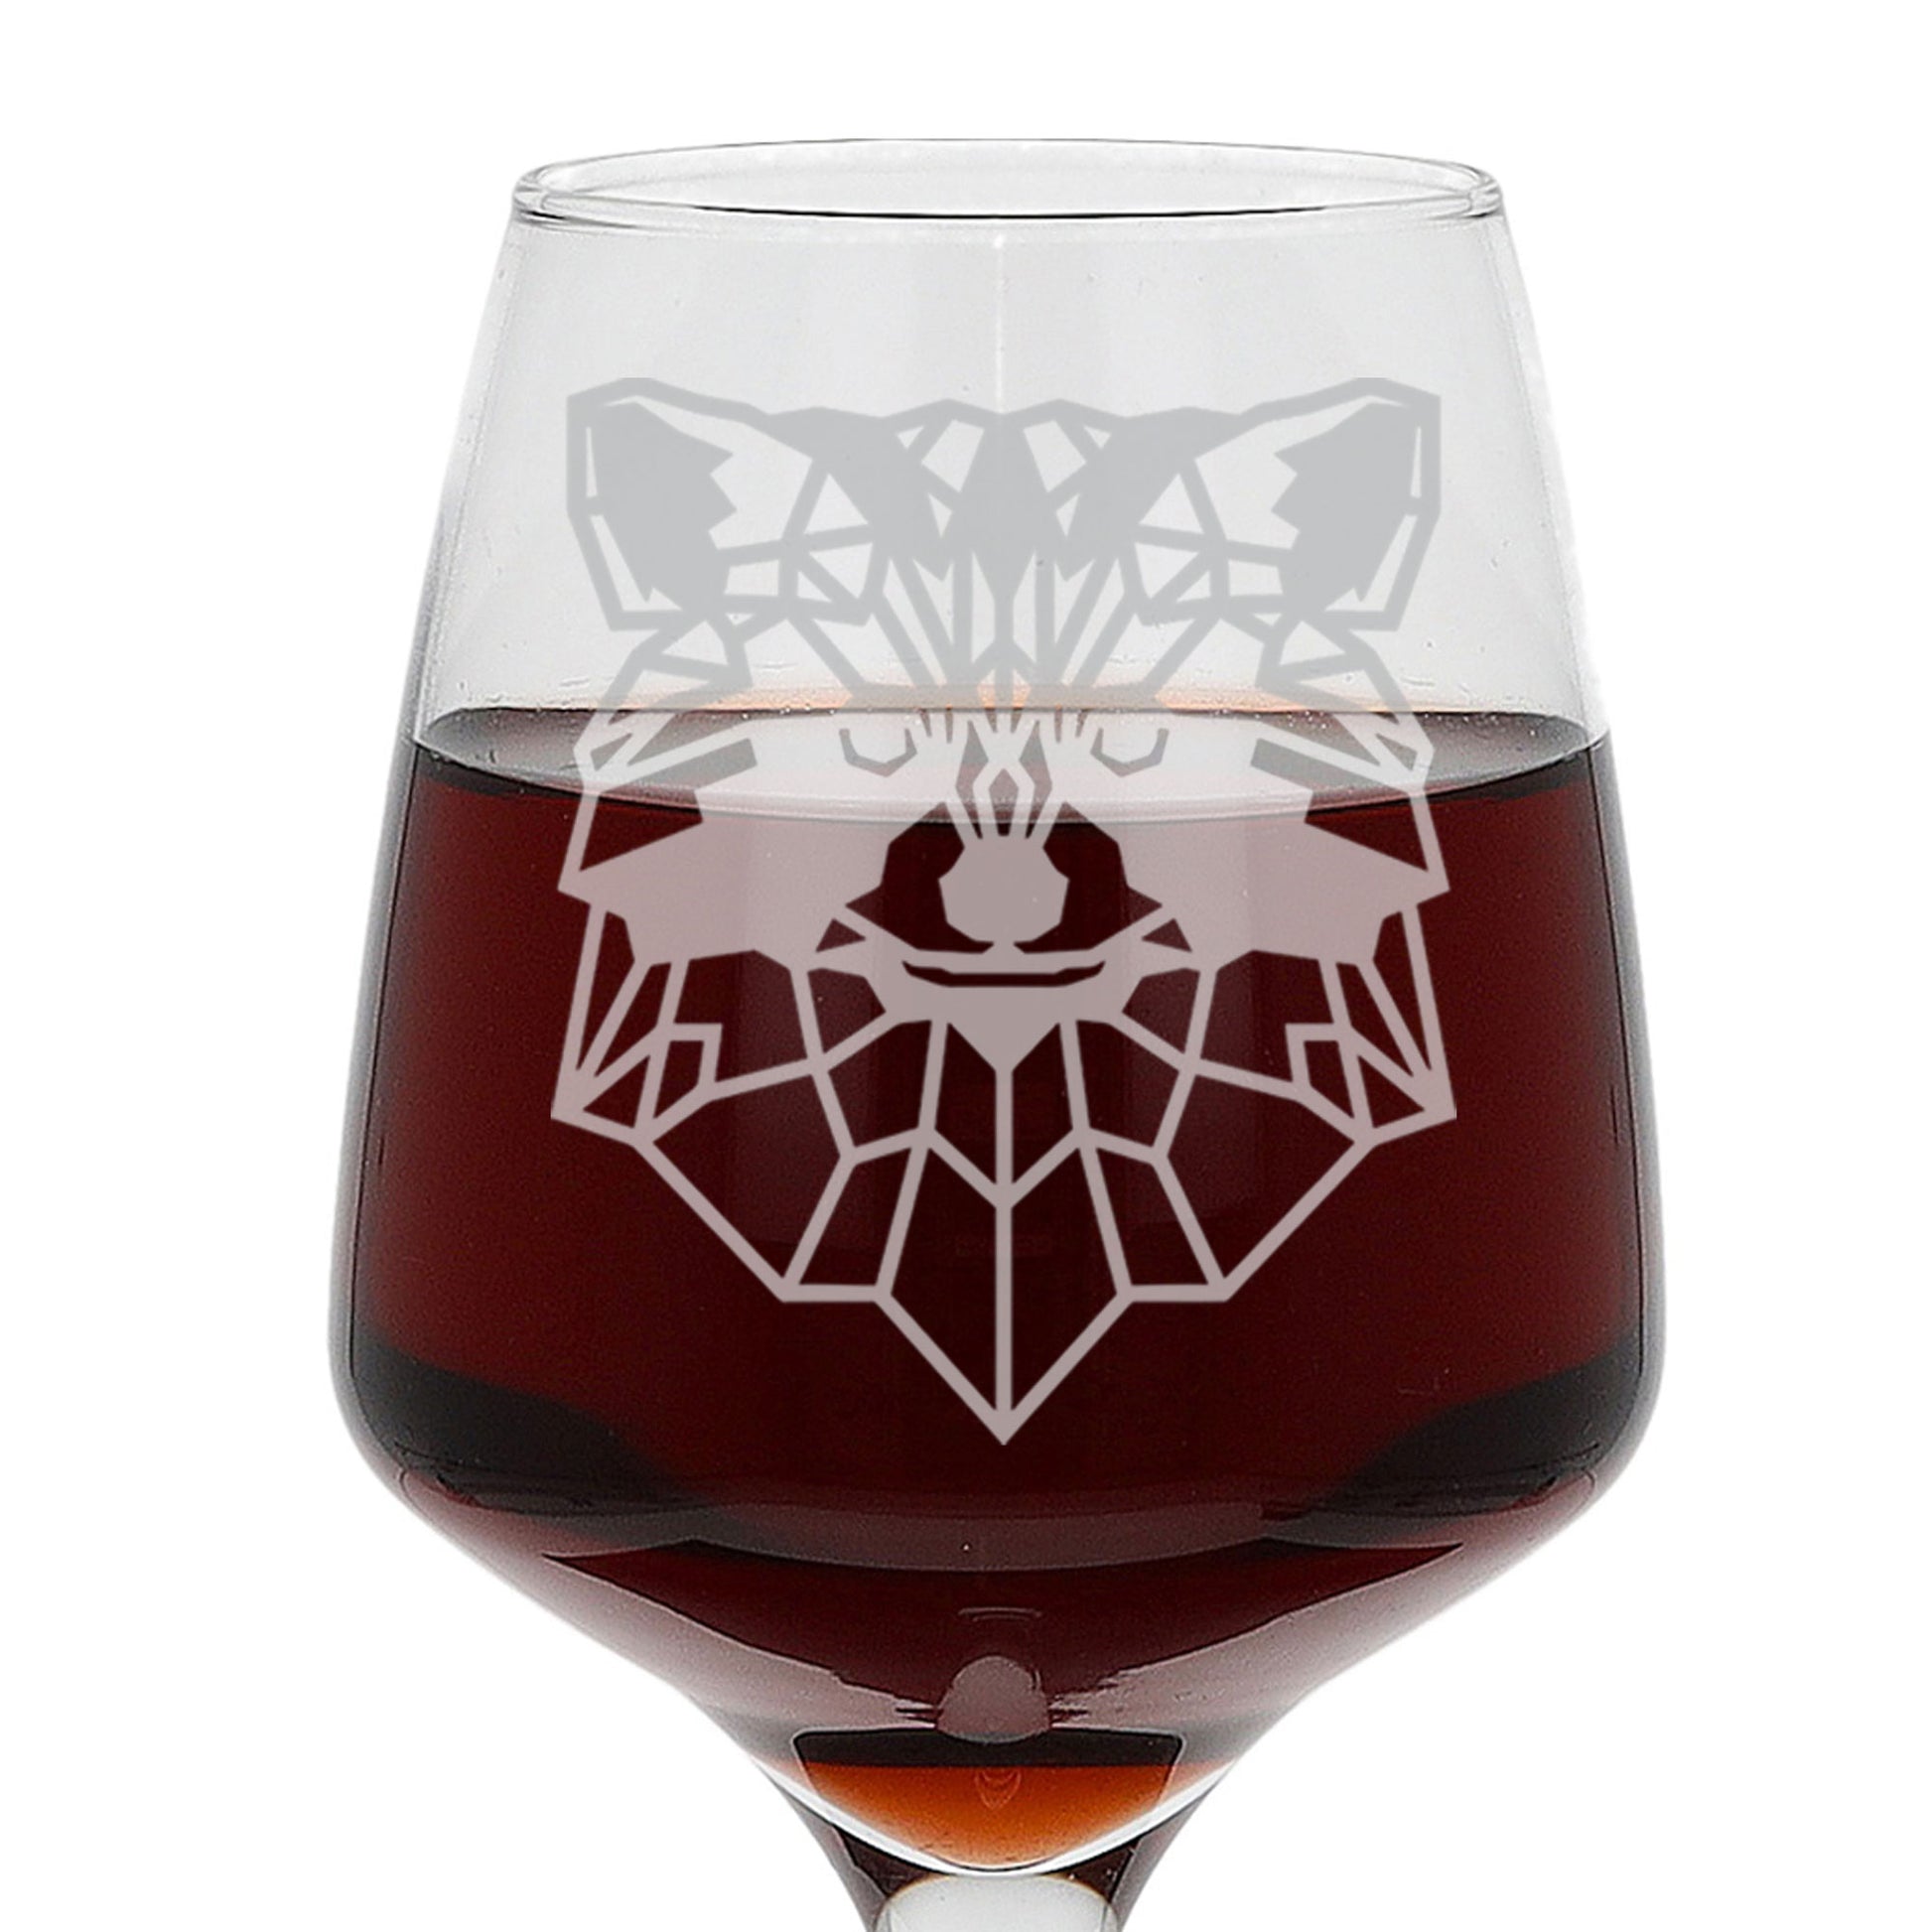 Raccoon Engraved Wine Glass  - Always Looking Good -   